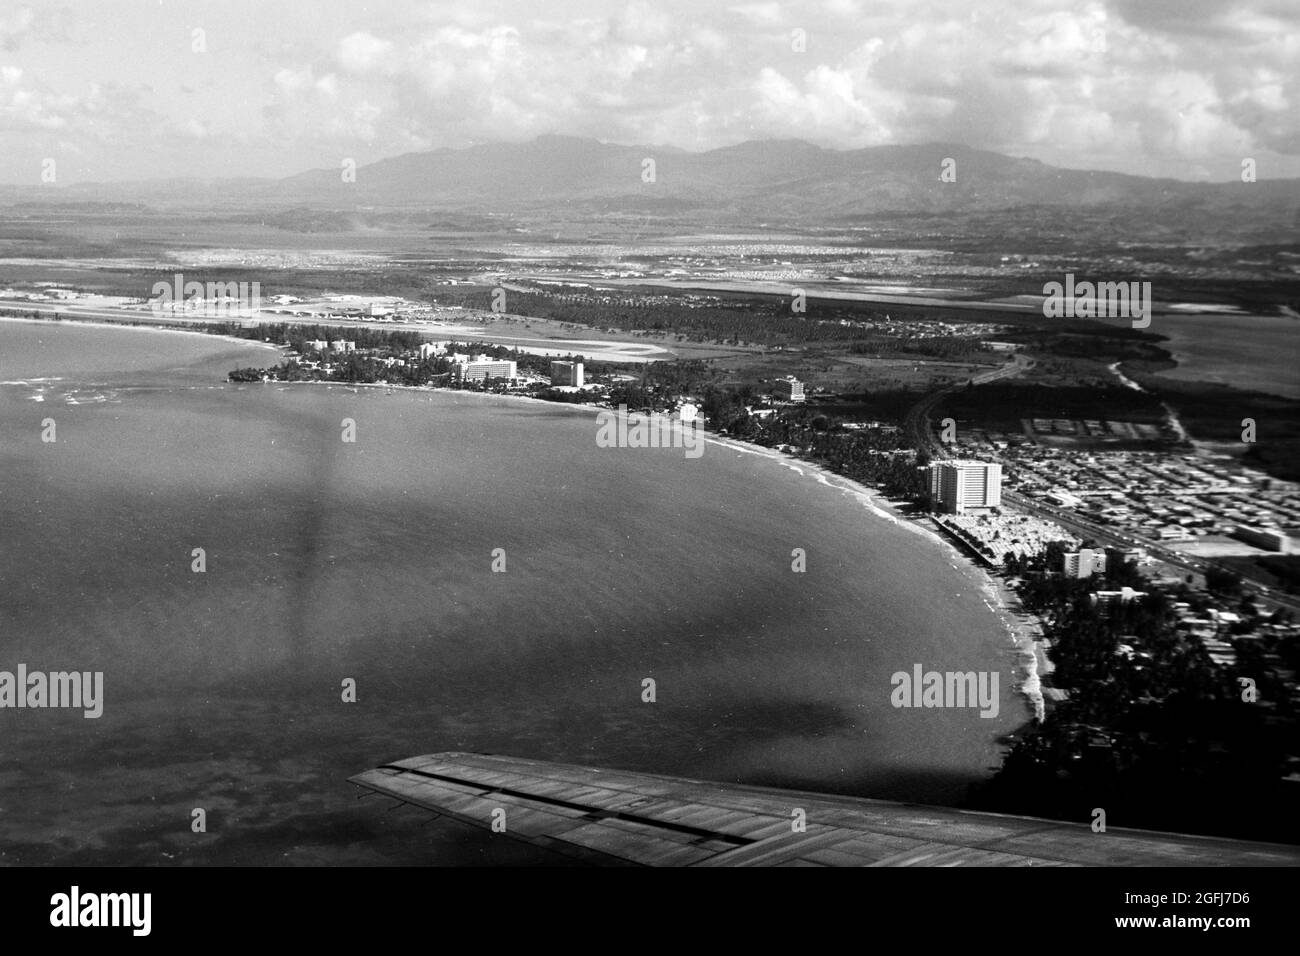 Blick auf Puerto Rico aus dem Flugzeugfenster, 1967. Vue sur Porto Rico depuis la fenêtre de l'avion, 1967. Banque D'Images